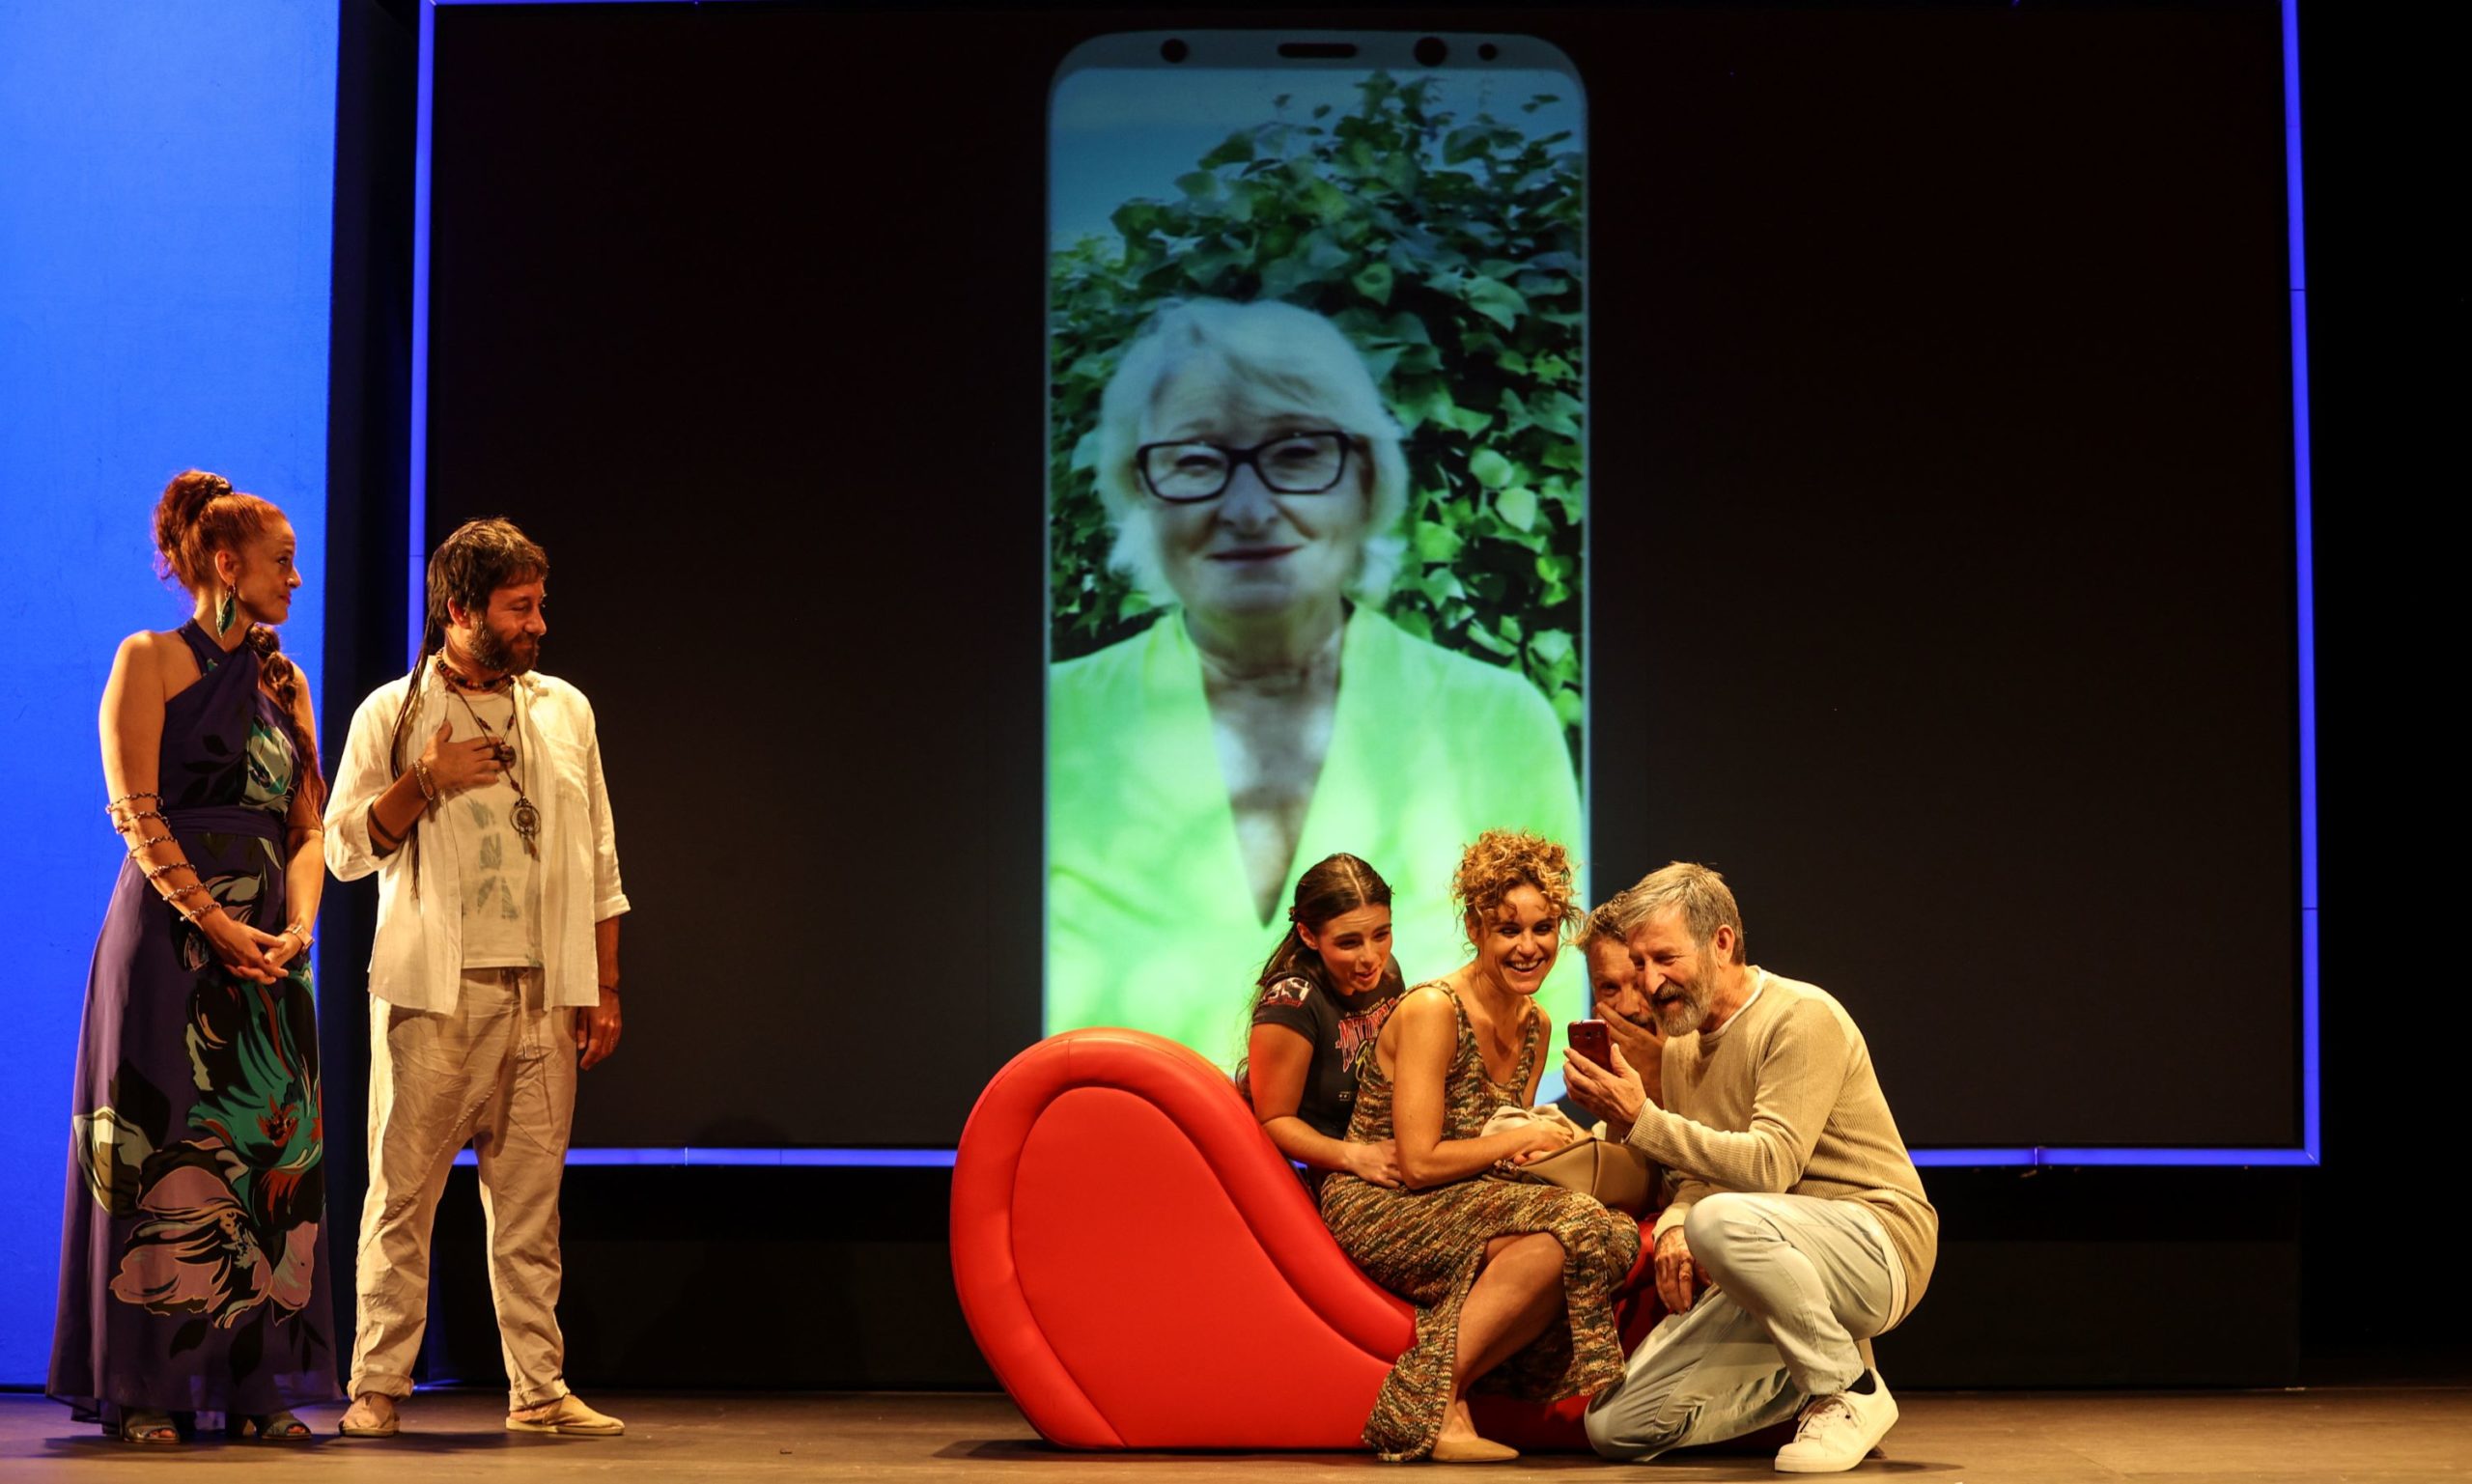 El Institut Valencià de Cultura presenta en el Teatro Rialto la comedia ‘Consciència’, de la compañía alcoyana La Dependent